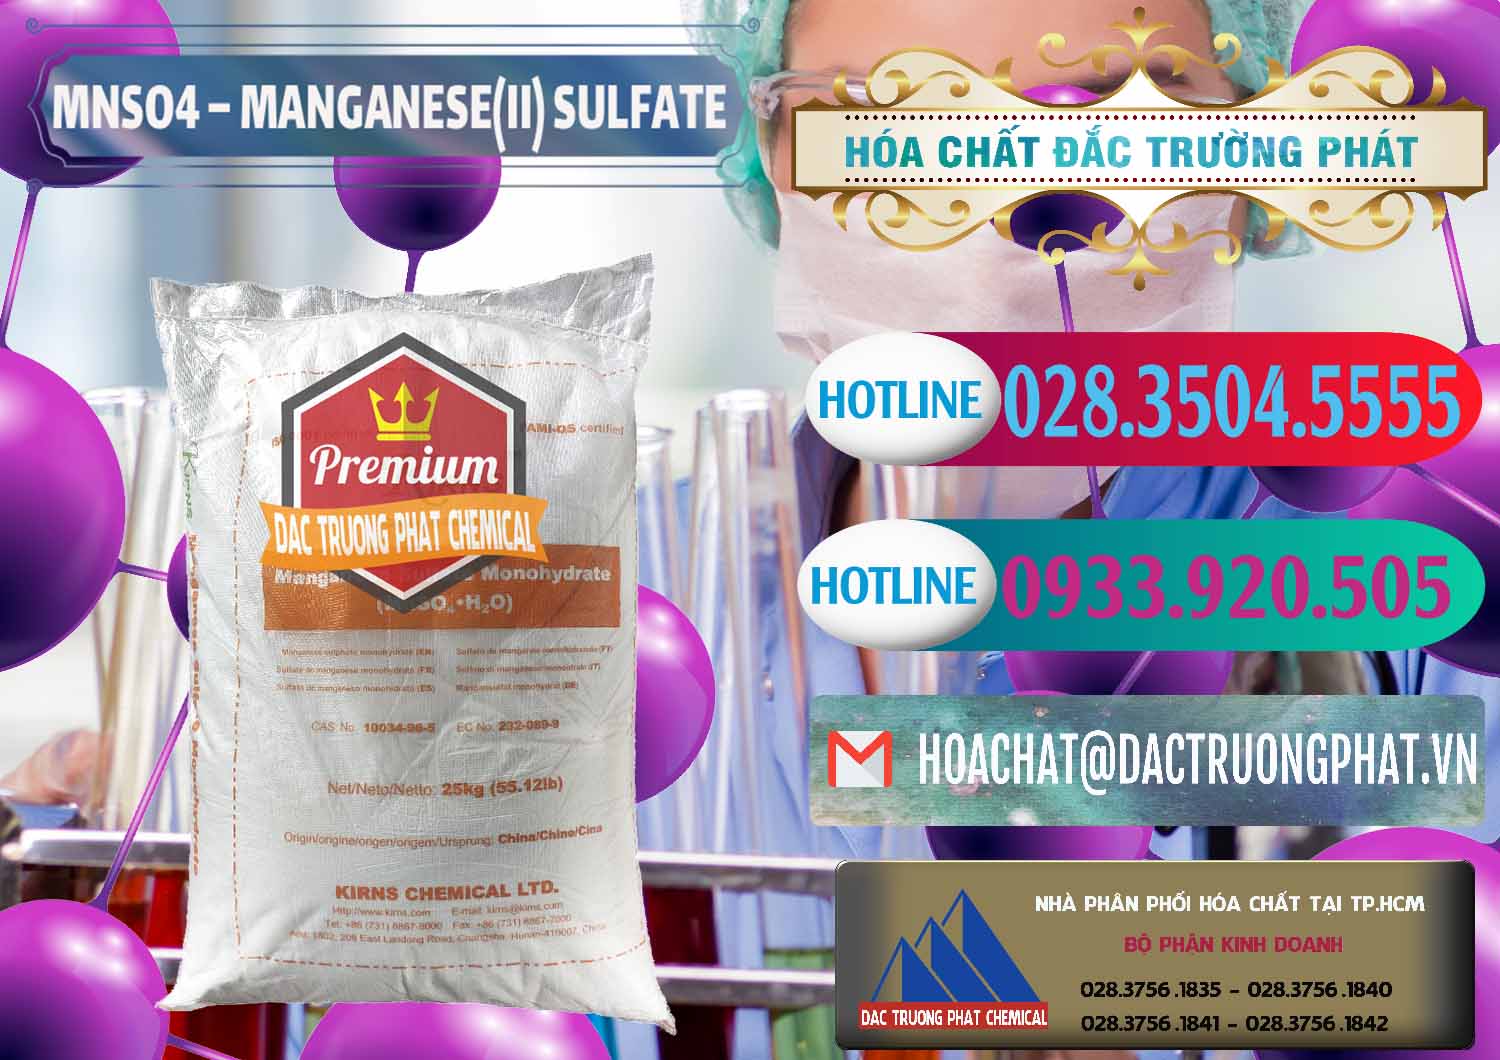 Cty chuyên bán & phân phối MNSO4 – Manganese (II) Sulfate Kirns Trung Quốc China - 0095 - Công ty chuyên kinh doanh _ cung cấp hóa chất tại TP.HCM - truongphat.vn